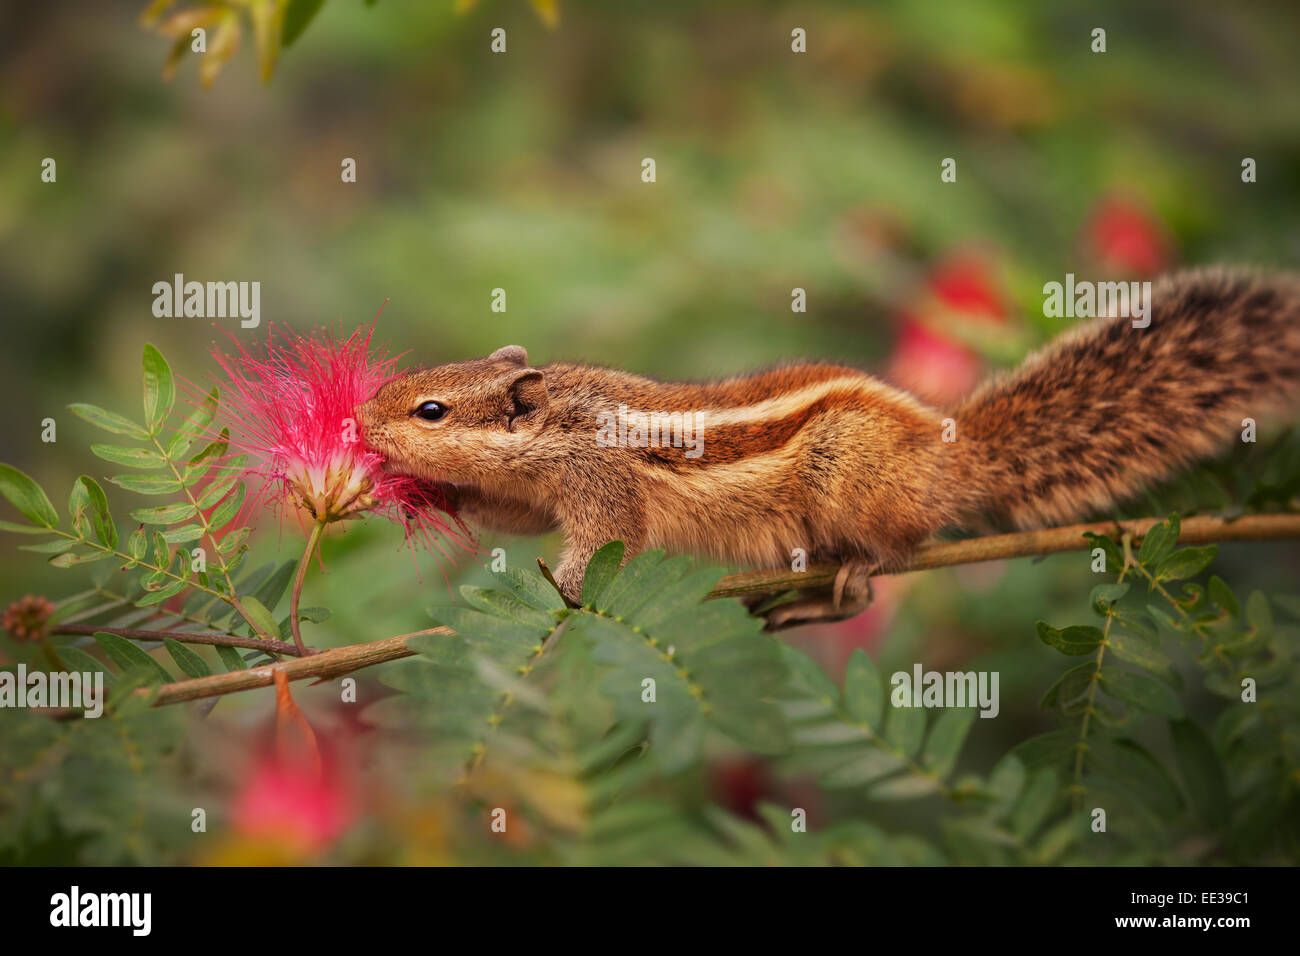 Palm scoiattolo in India, il campionamento il nettare da un fiore mentre aggrappato a un ramo di stretta. Zoom estremi shot. Foto Stock